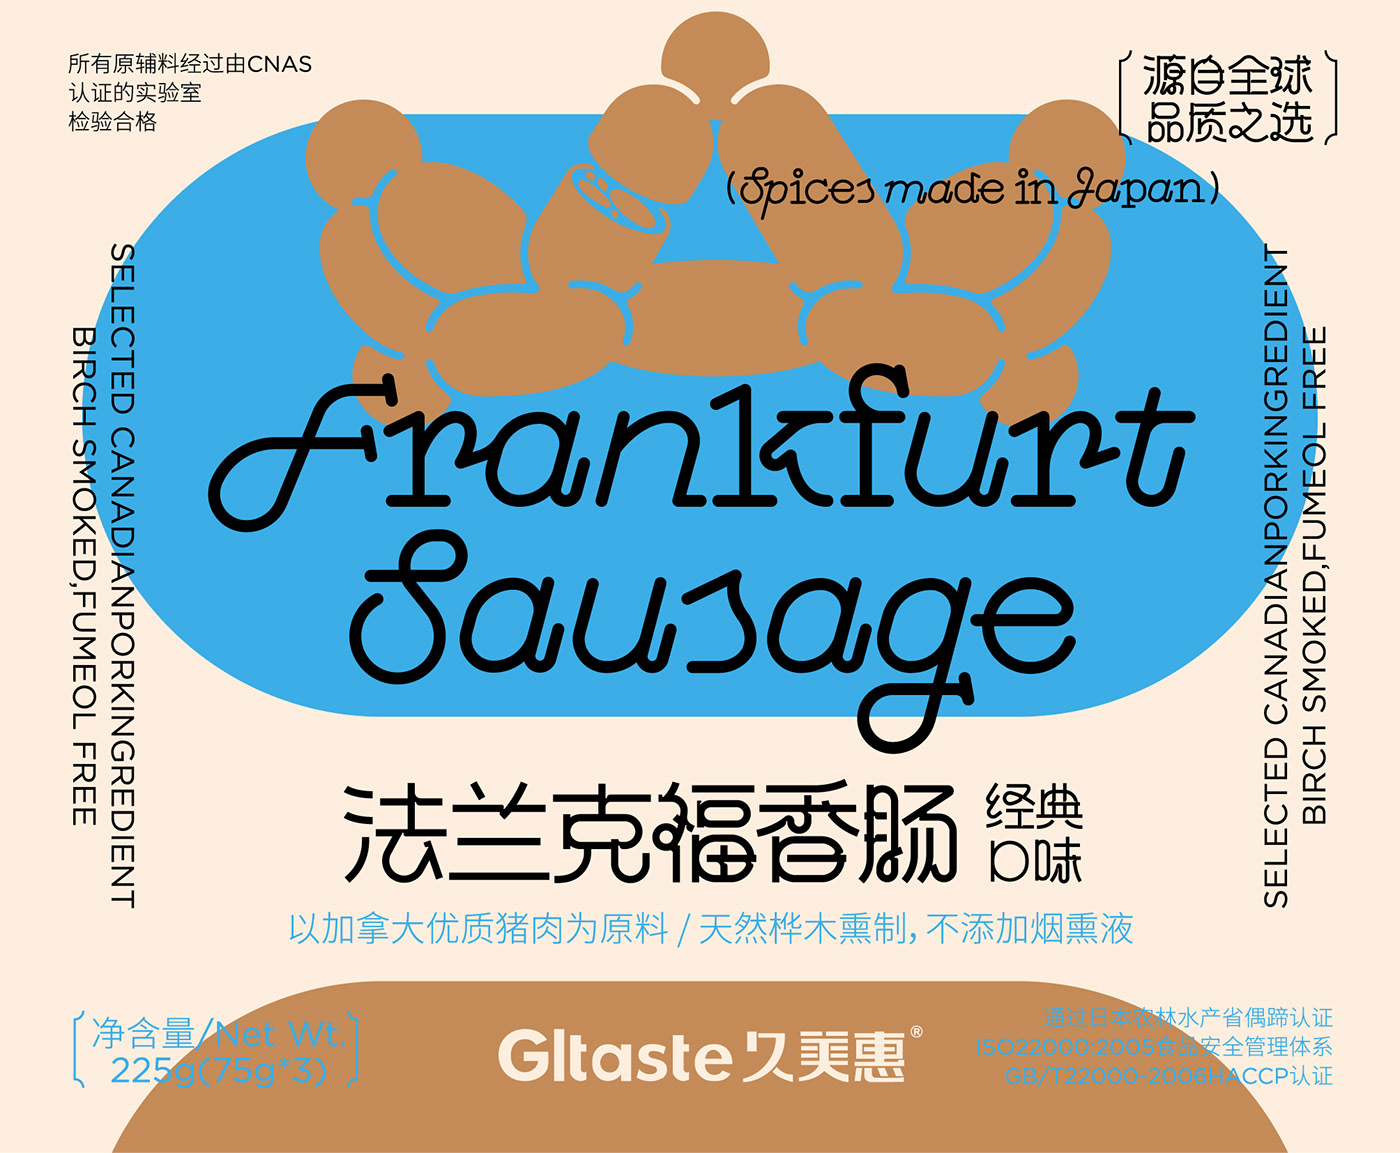 Packaging packaging design 中国包装设计 包装 包装设计 威海包装设计 食品包装设计 香肠包装设计